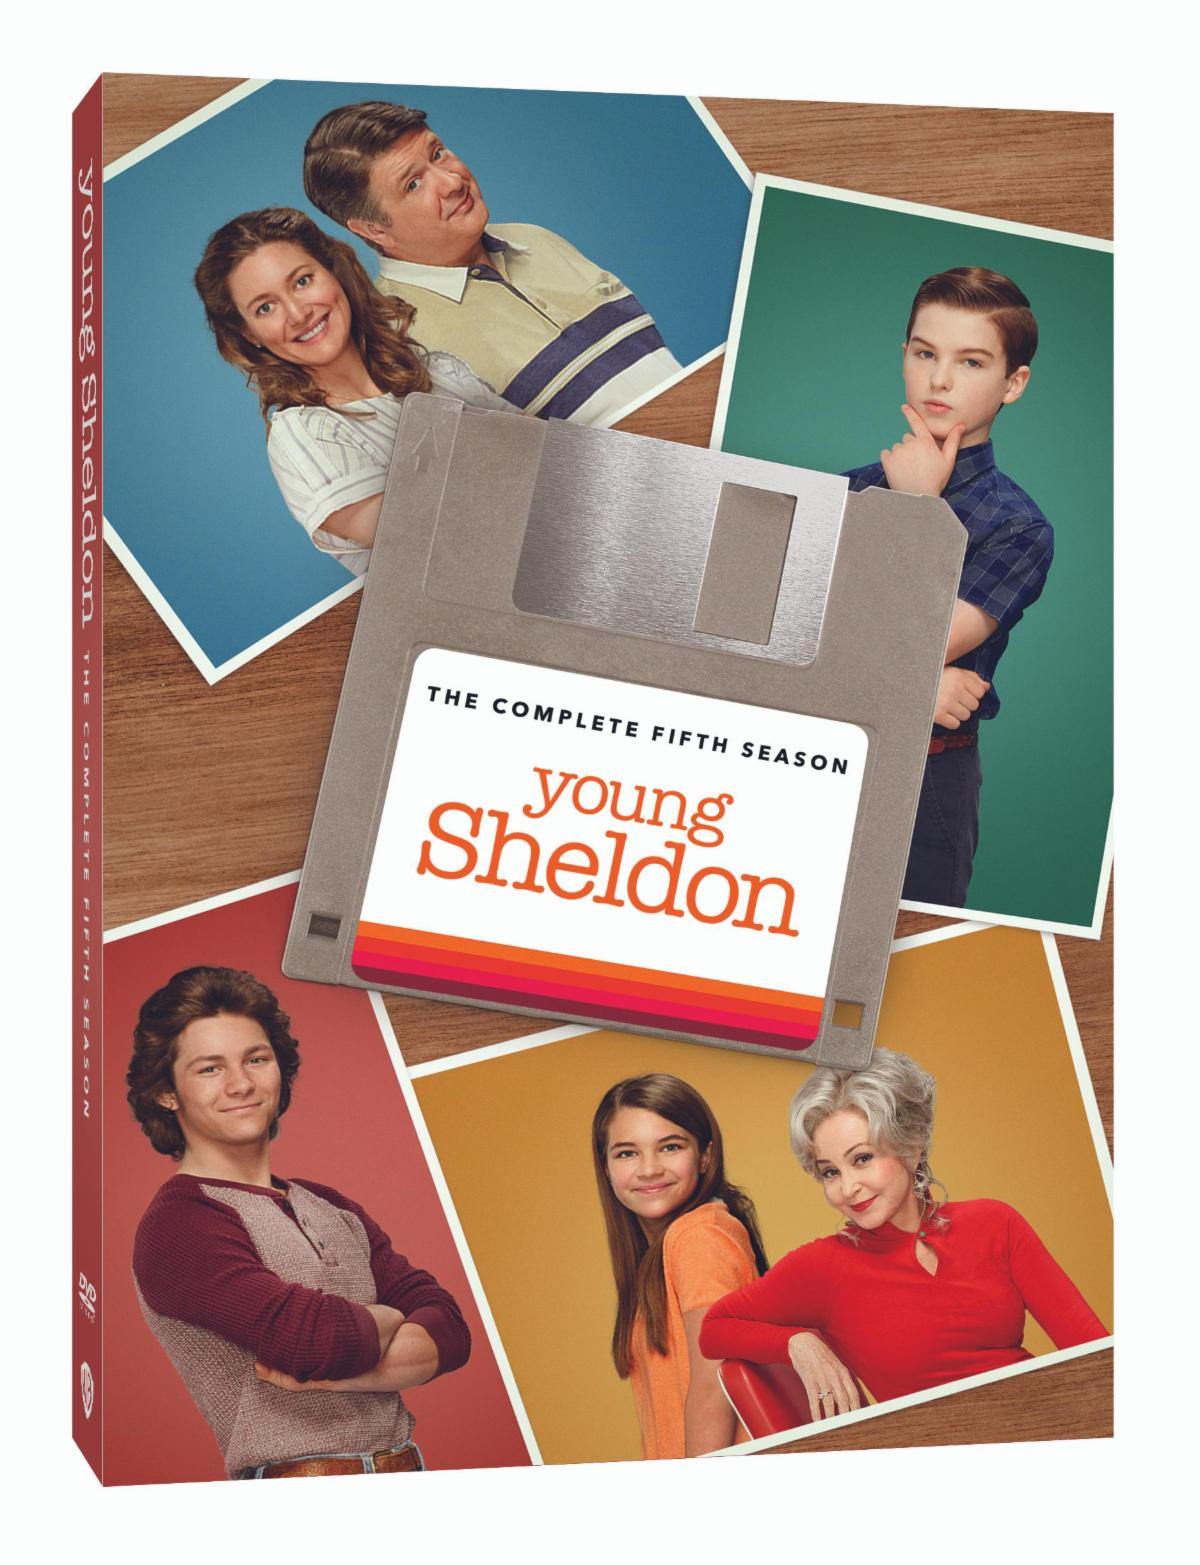 Young Sheldon Season 5 Blu-ray Review